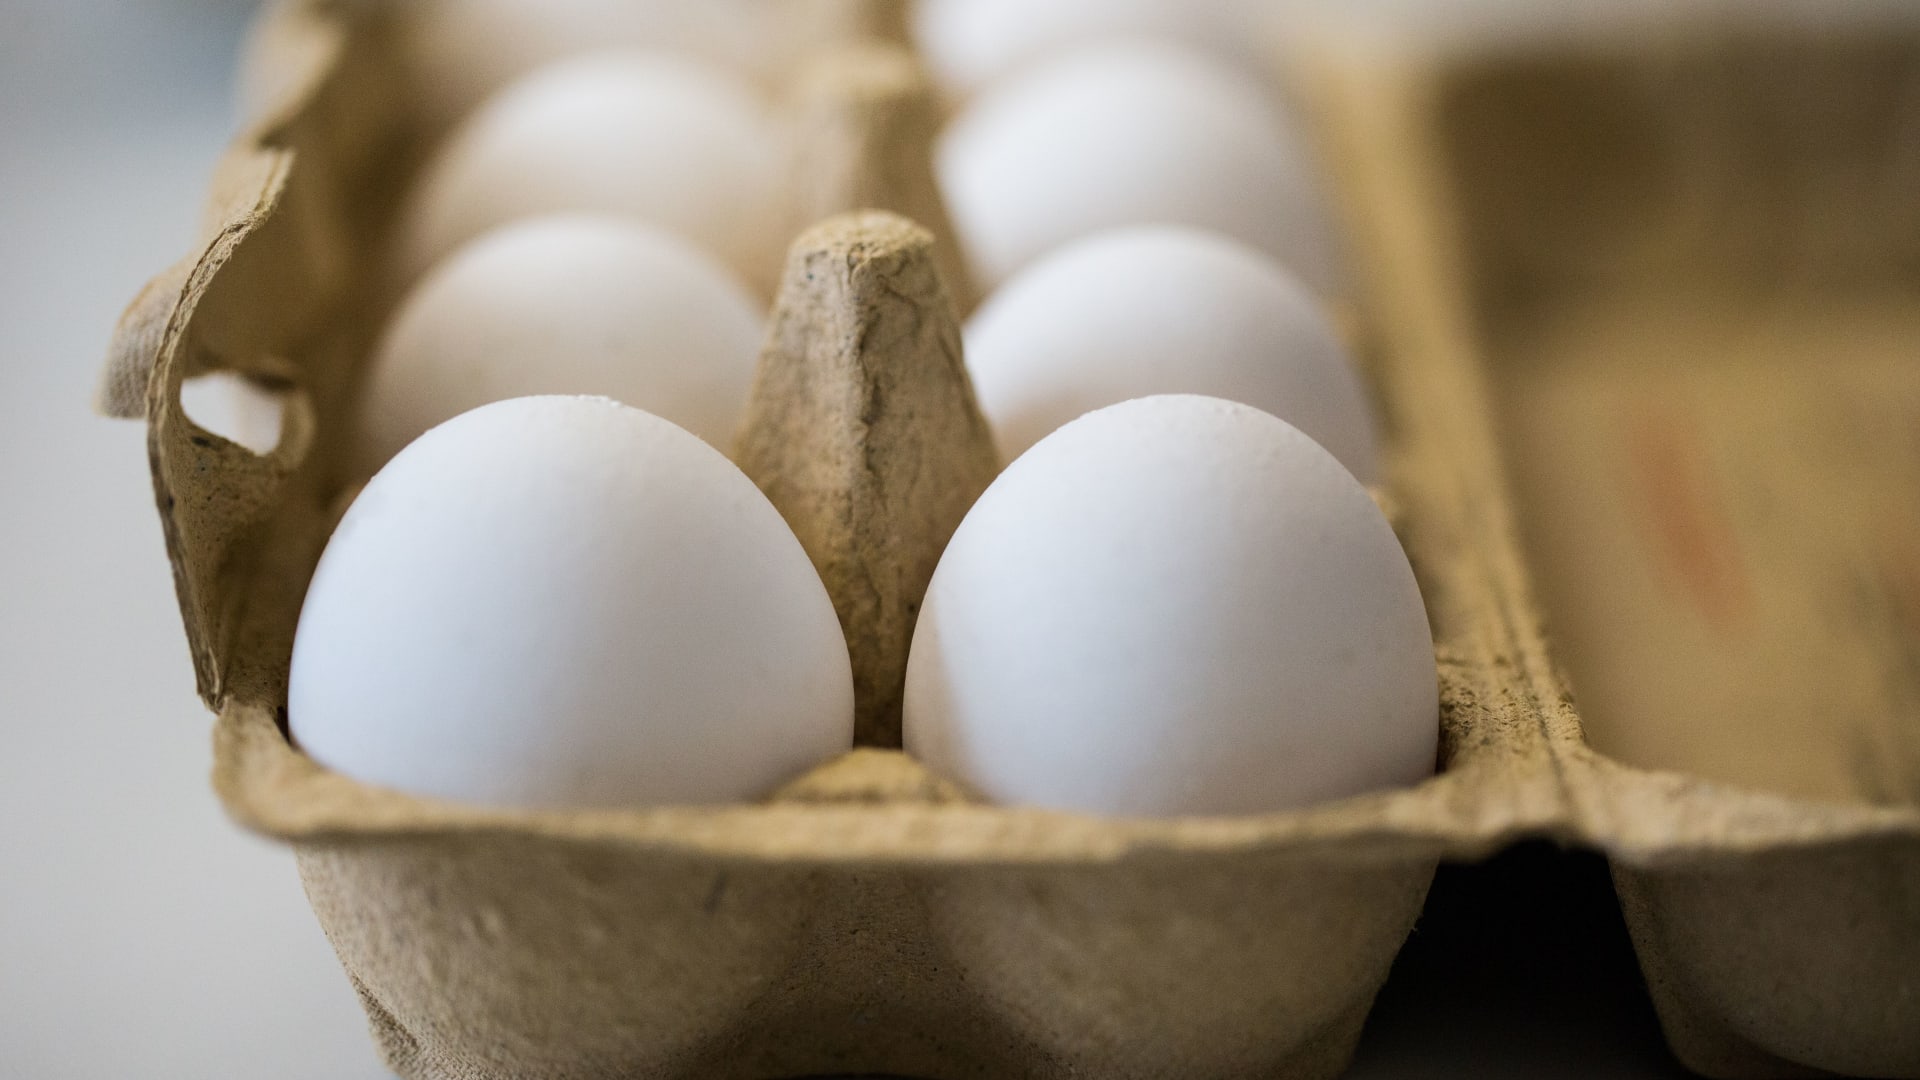 البيض جيد أم لا؟ وما هي الآثار الصحية المرتبطة بتناوله؟